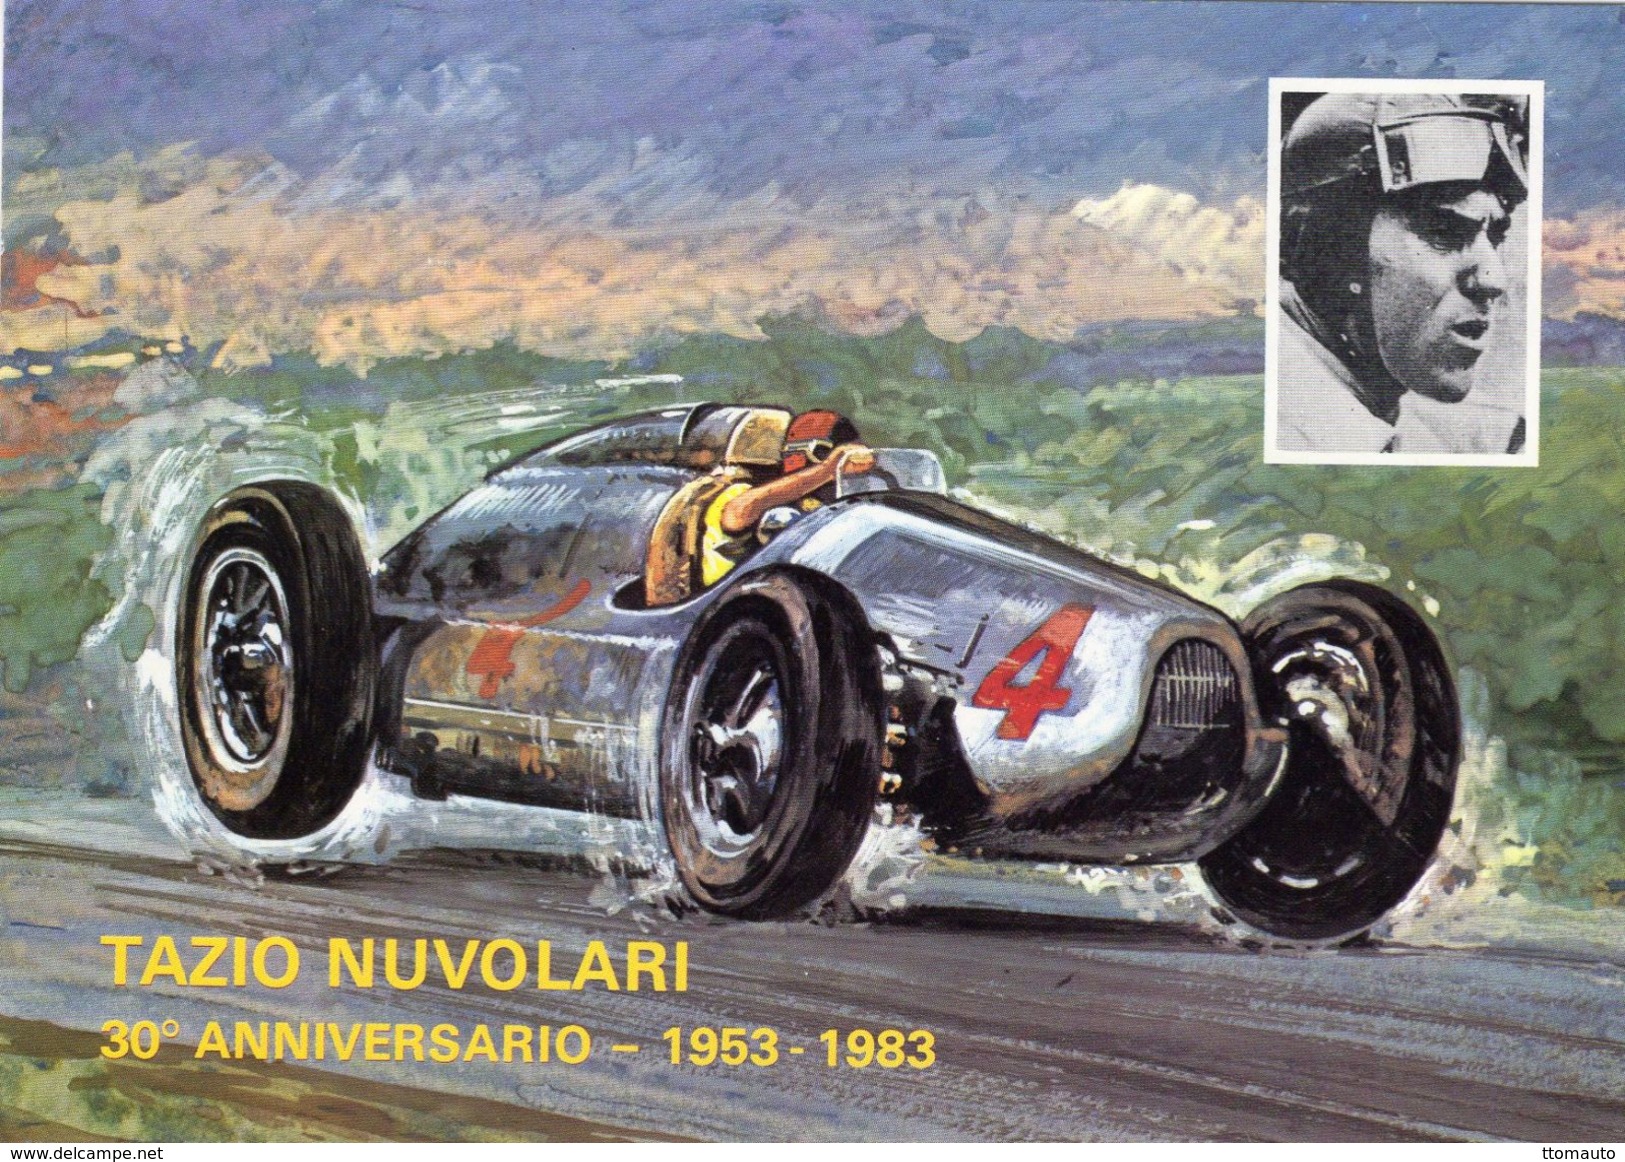 British Grand Prix, Donington 1938  -  Tazio Nuvolari  -  Auto Union D Type  -  Art Card  - CPM - Grand Prix / F1